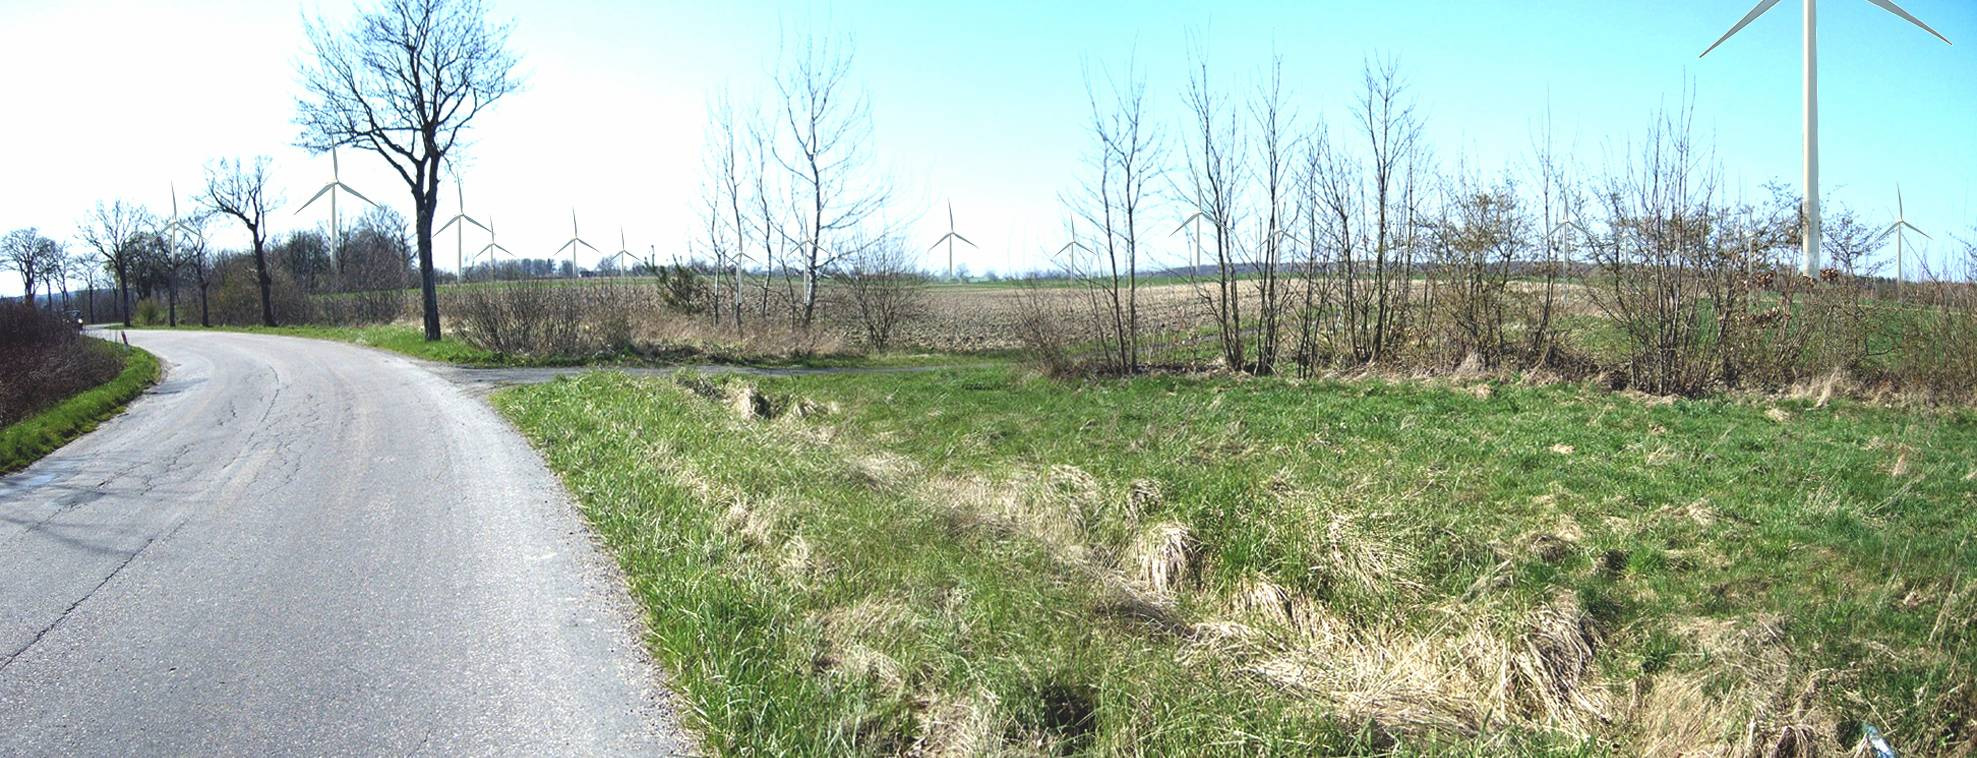 Fot. 4. Wizualizacja elektrowni farm wiatrowych Nowy Jarosław (po lewej stronie) i Jarosław (po prawej stronie) od wschodu. Przykład skumulowanego oddziaływania farm wiatrowych na krajobraz.